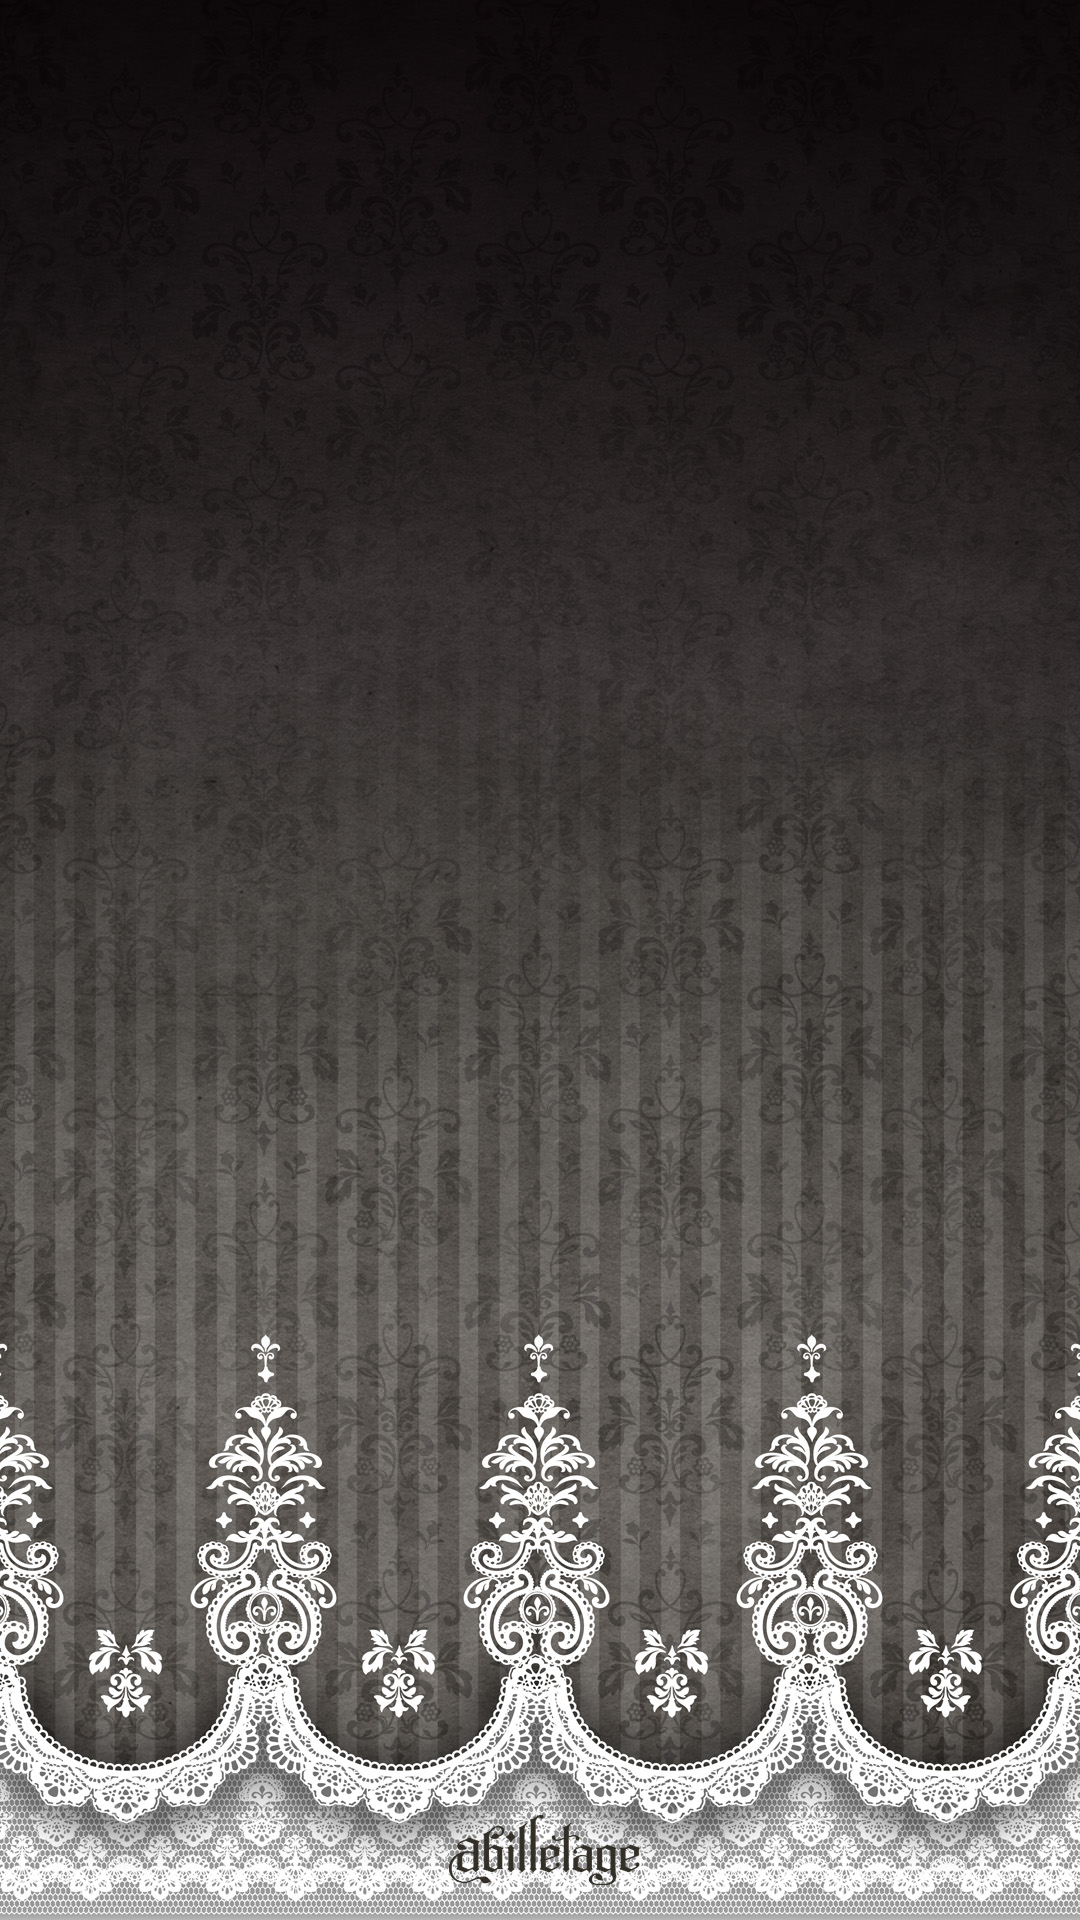 アビエタージュ スマホ壁紙配布第三段 今回は アンティークピアノ柄 レースプリントアンブレラで使用したデザイン スチームガーデンとの共同主催イベント サンジェルマンの時計塔 のイメージビジュアル アビエタージュハロウィン 13